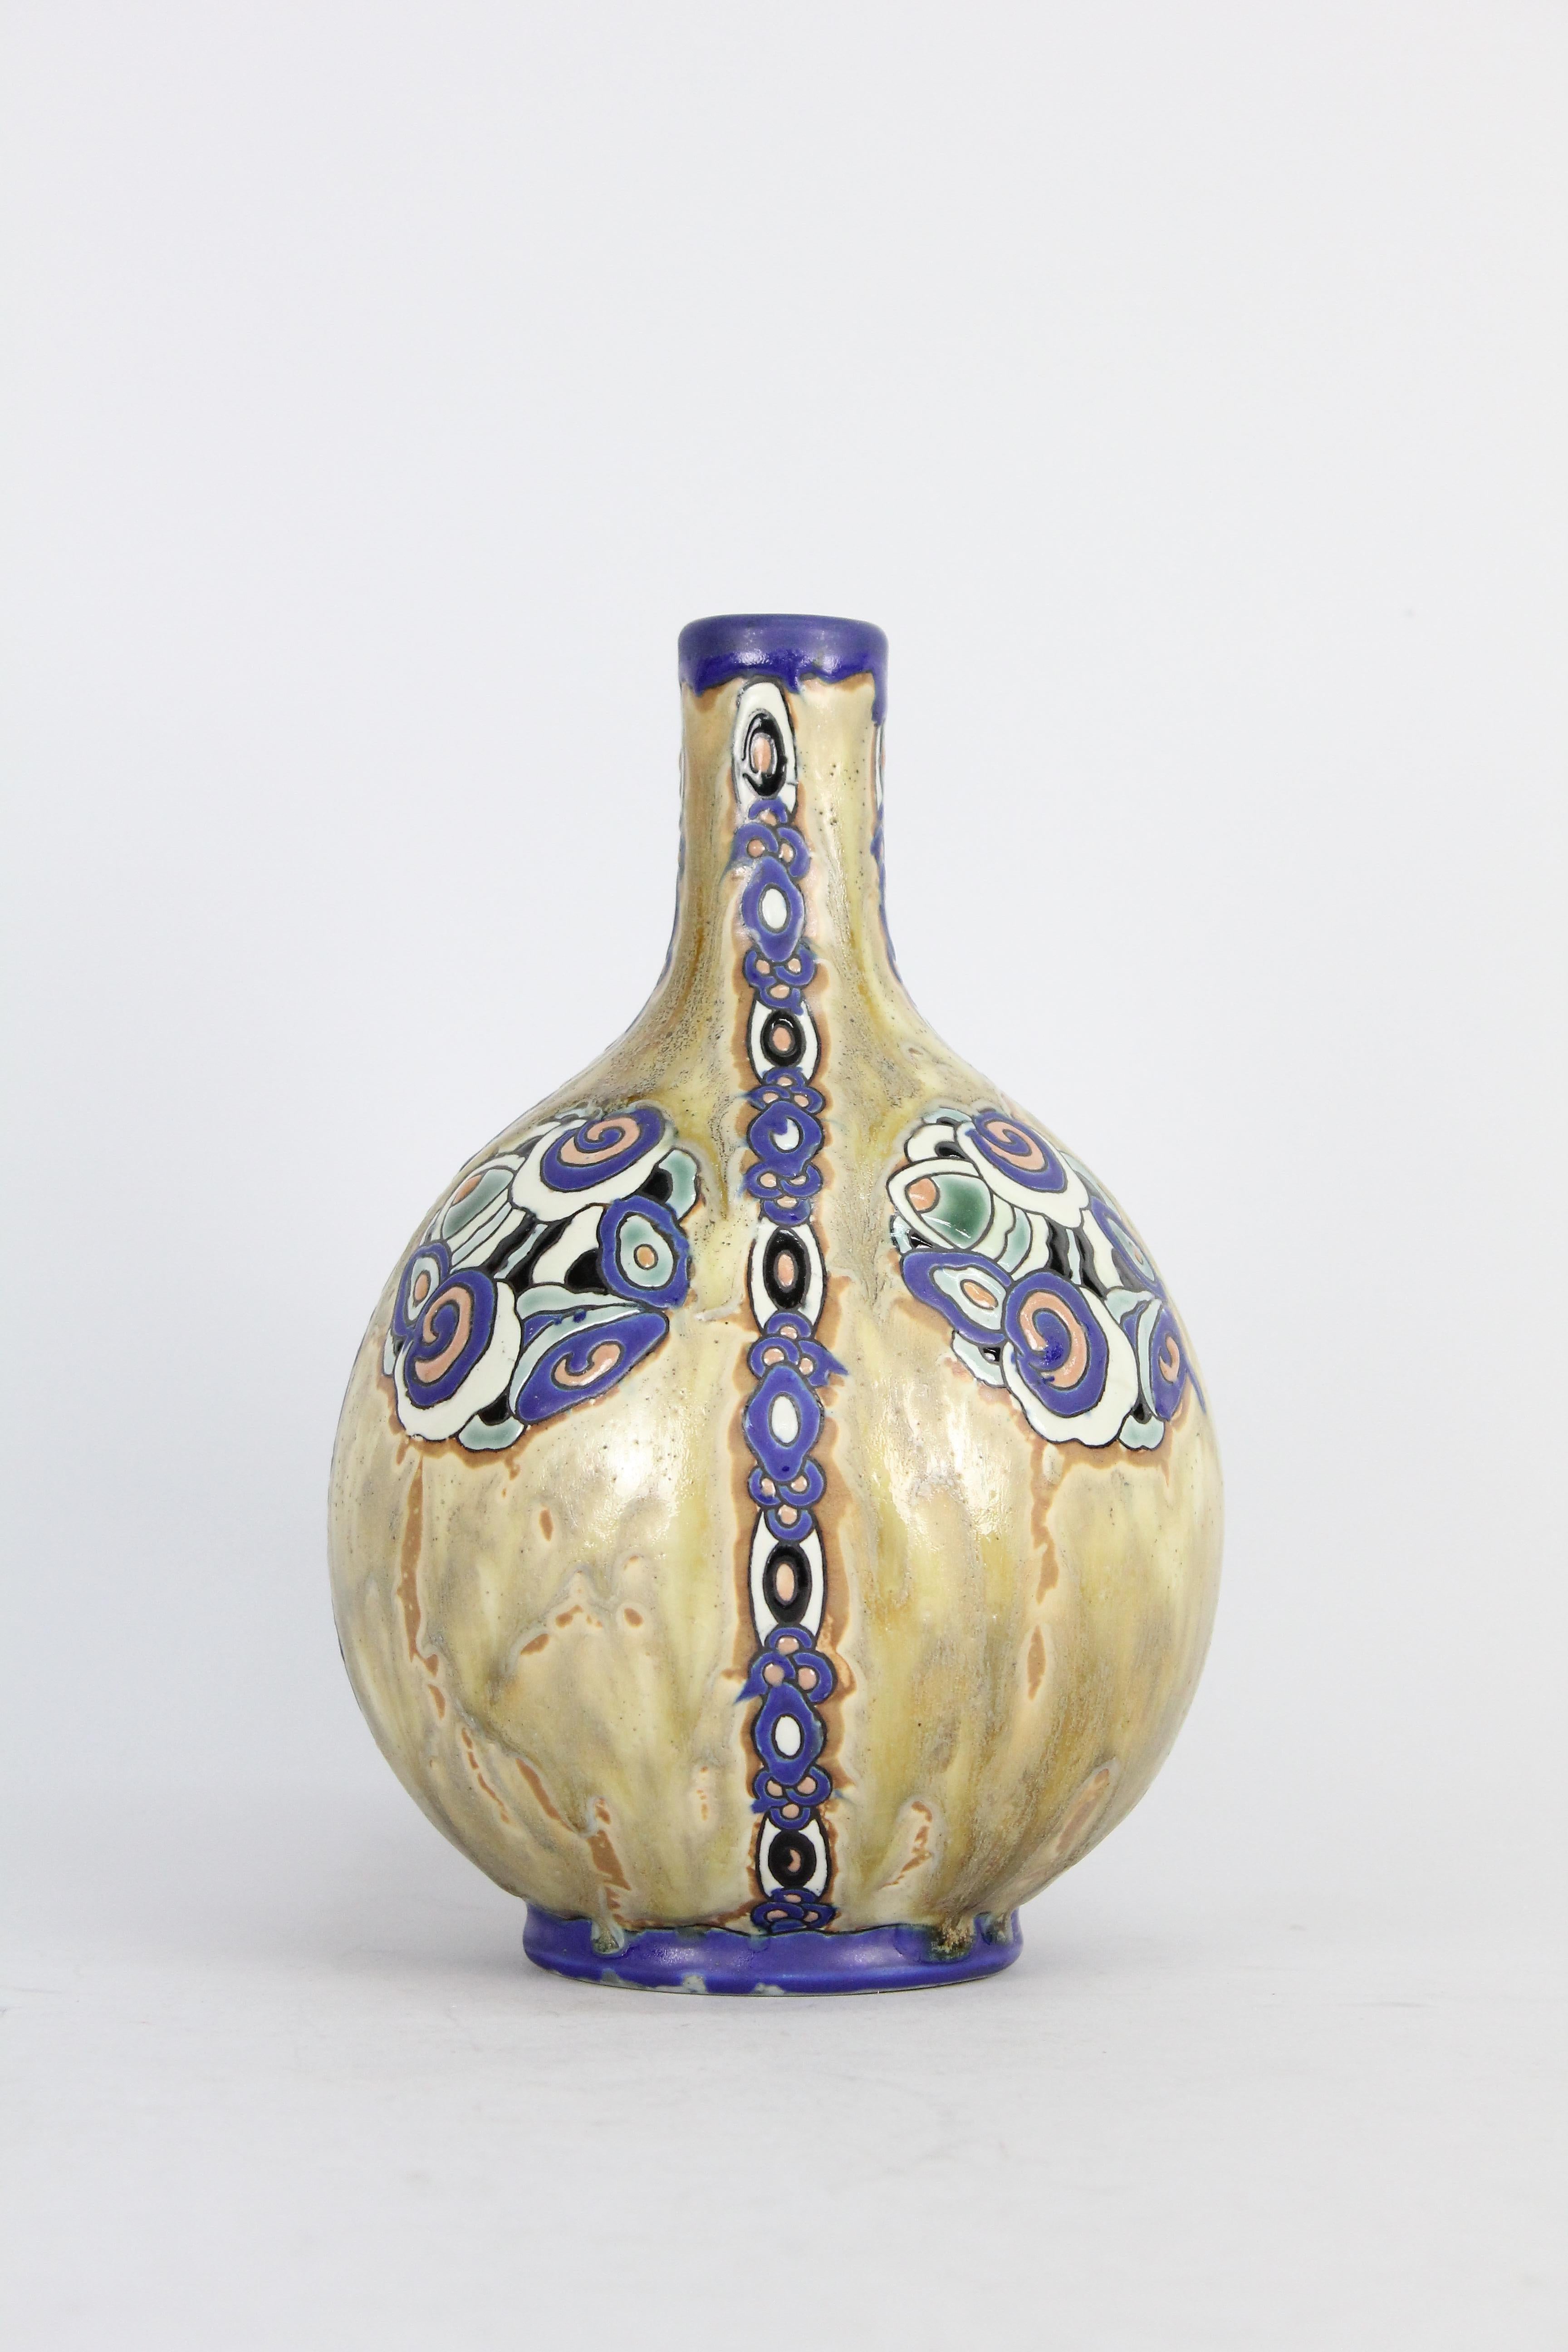 Un très beau vase en céramique typique de l'Art déco par Charles Catteau pour Boch Fréres.

Signé 